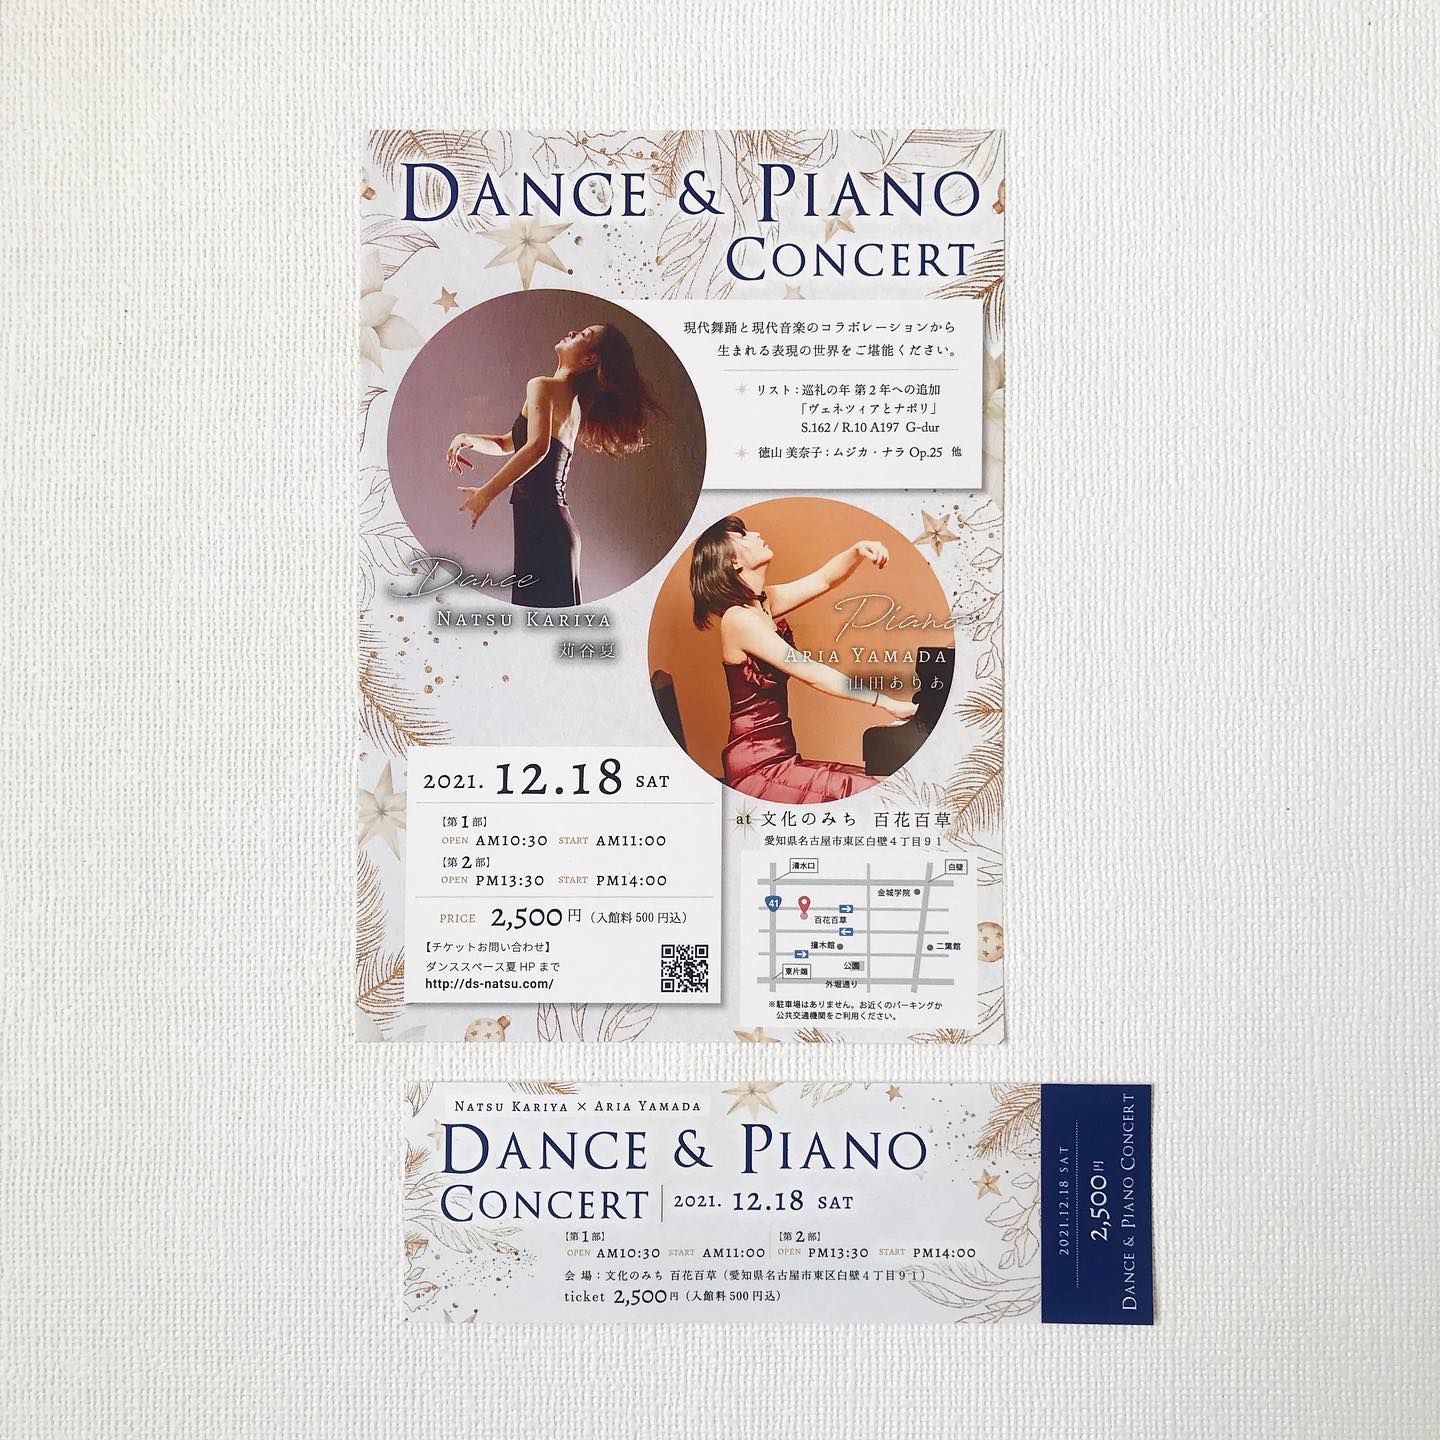 ダンス・ピアノ公演 チラシとチケット